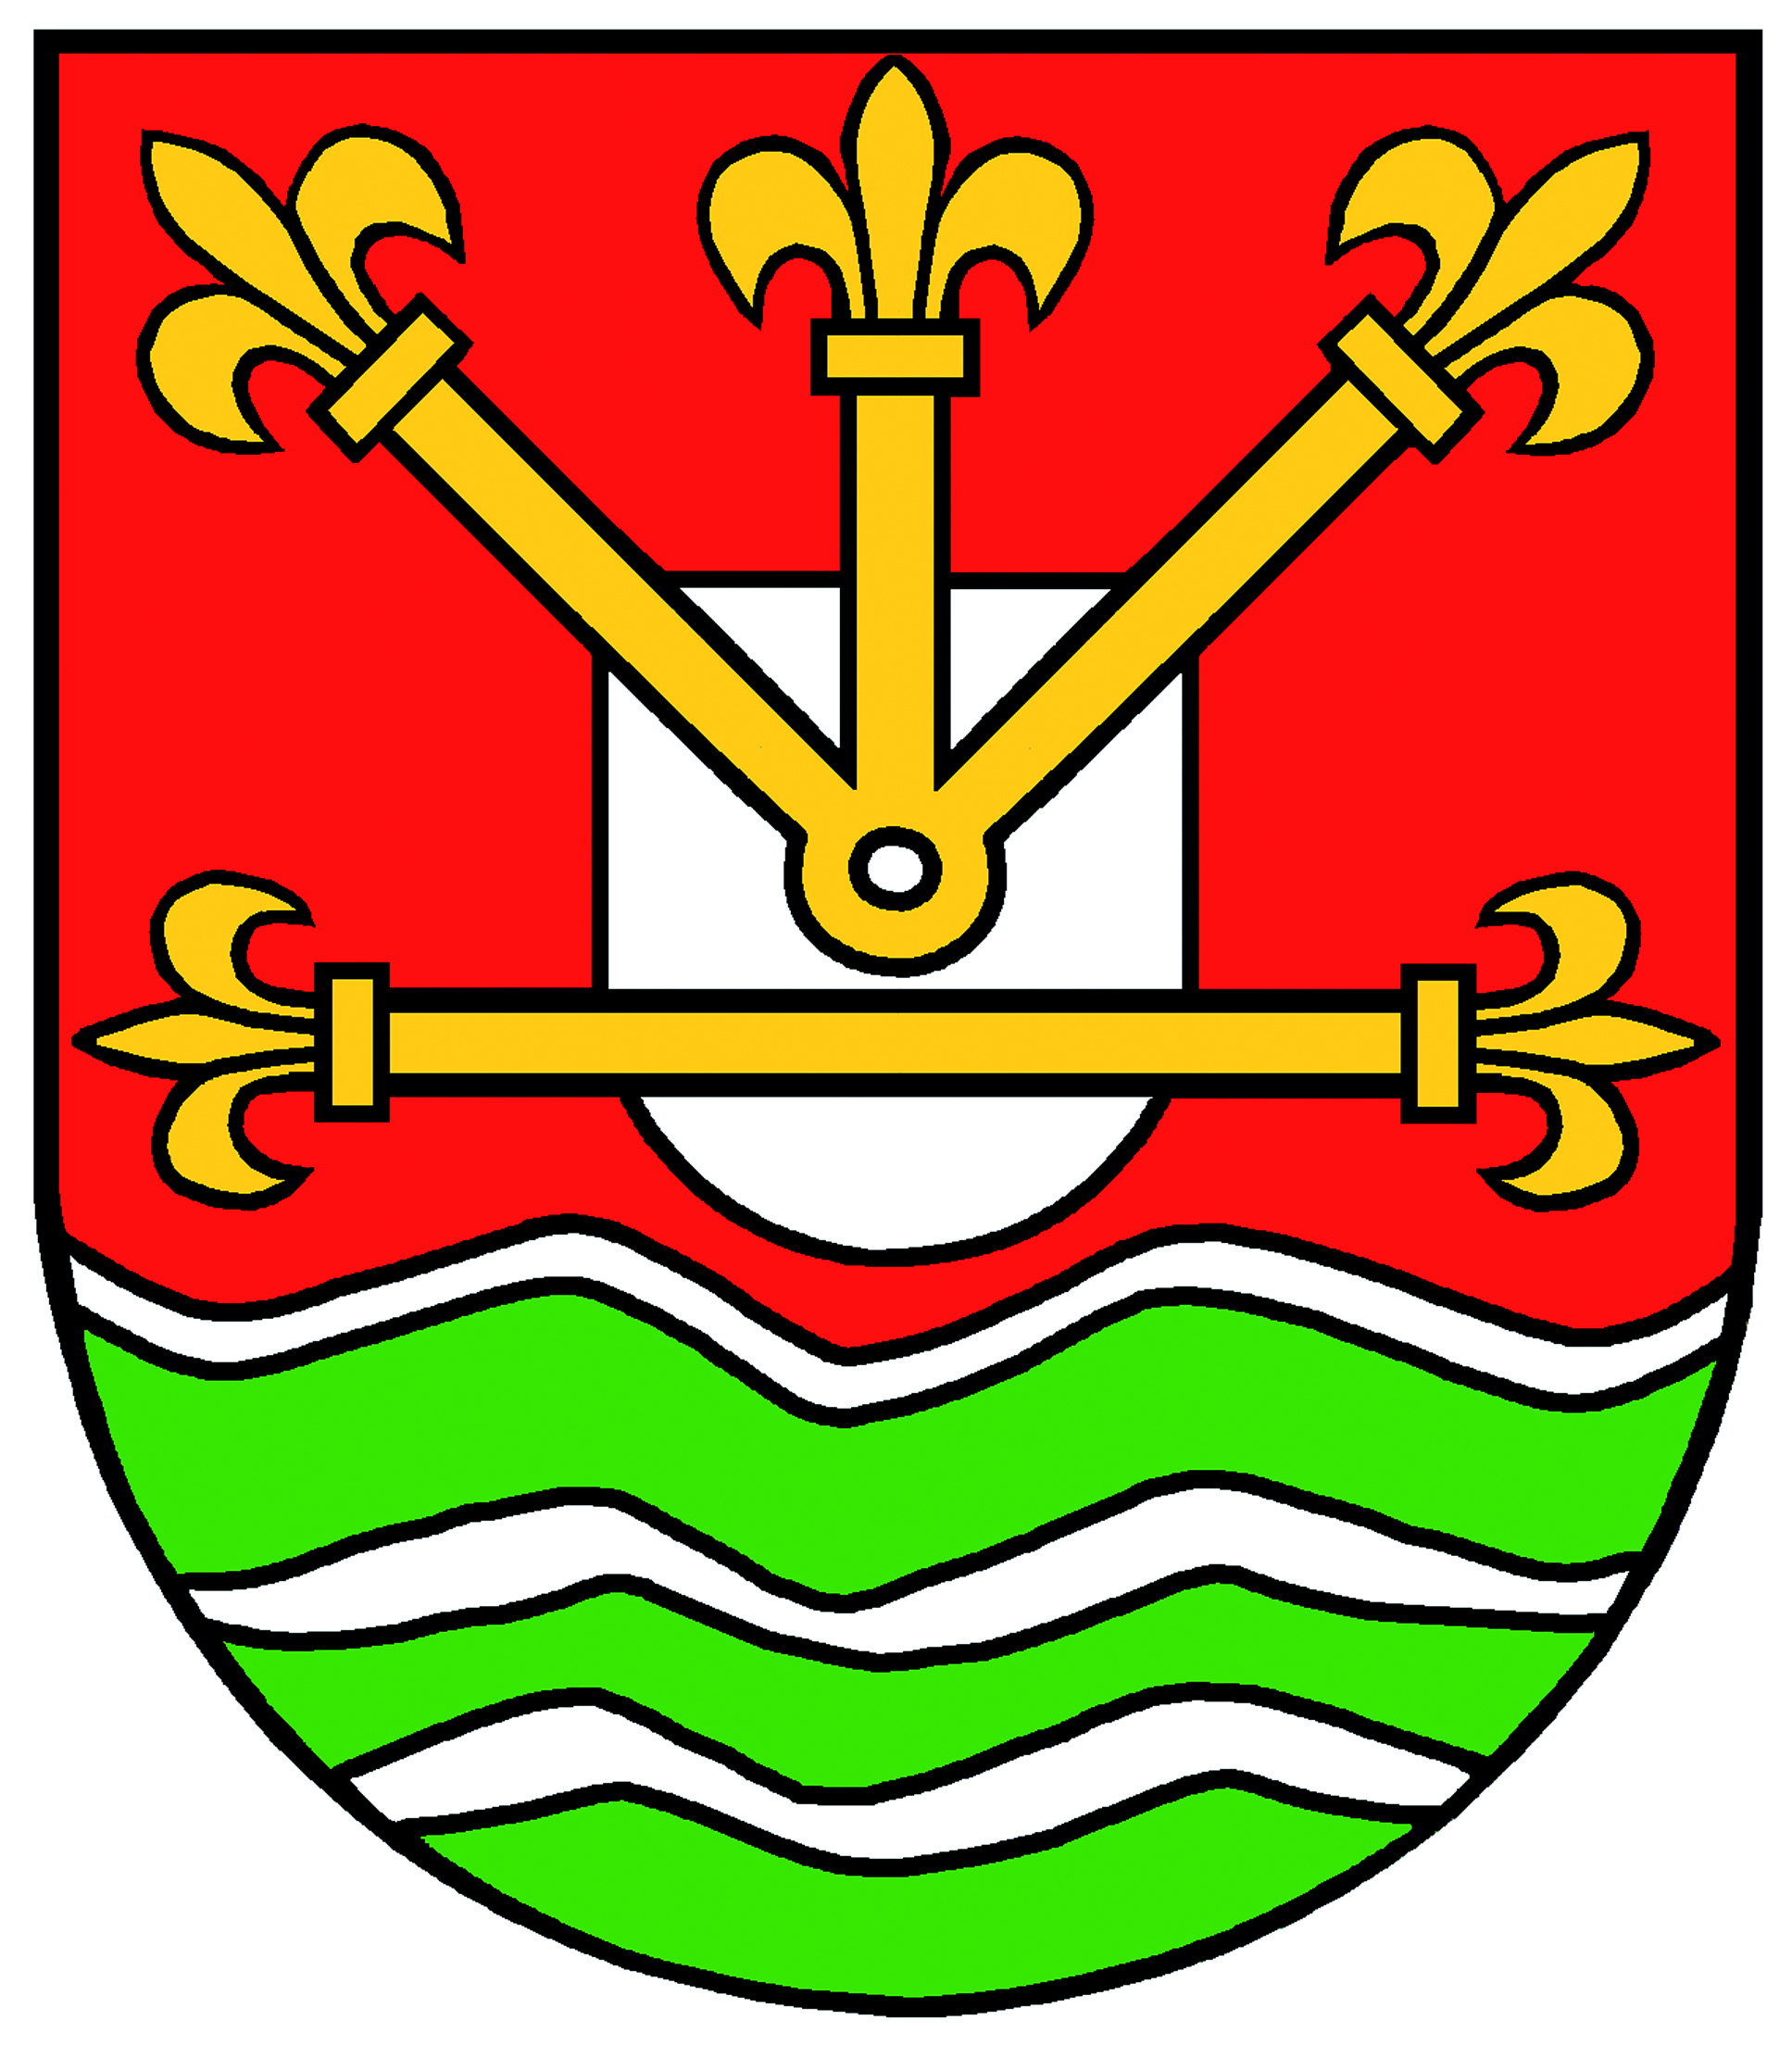 Schermbeck Wappen